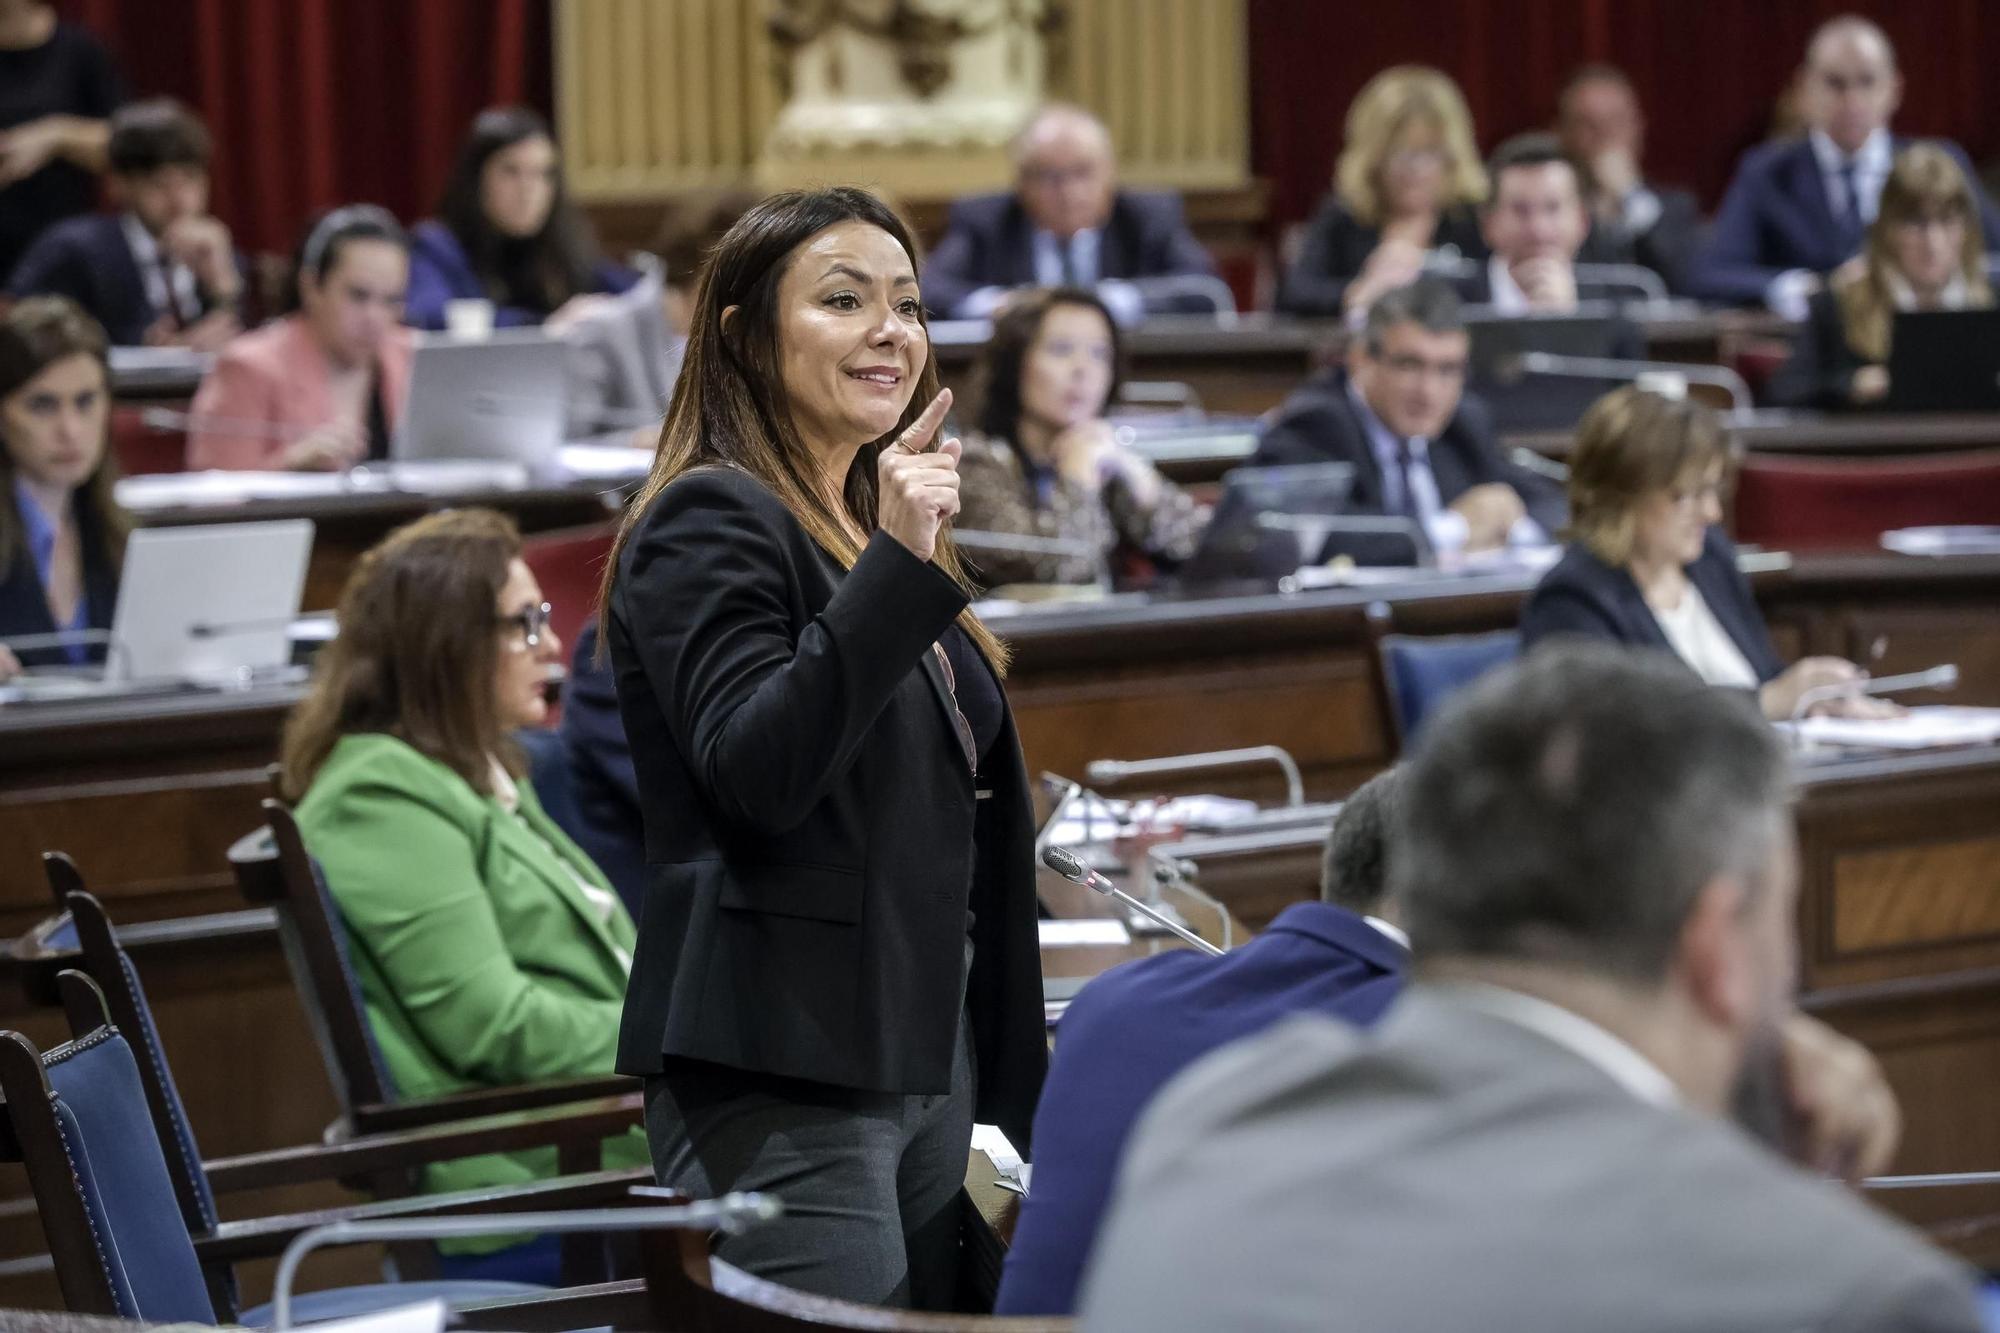 Crisis de Vox en Baleares | FOTOS: La crisis de Vox capitaliza el pleno del Parlament balear